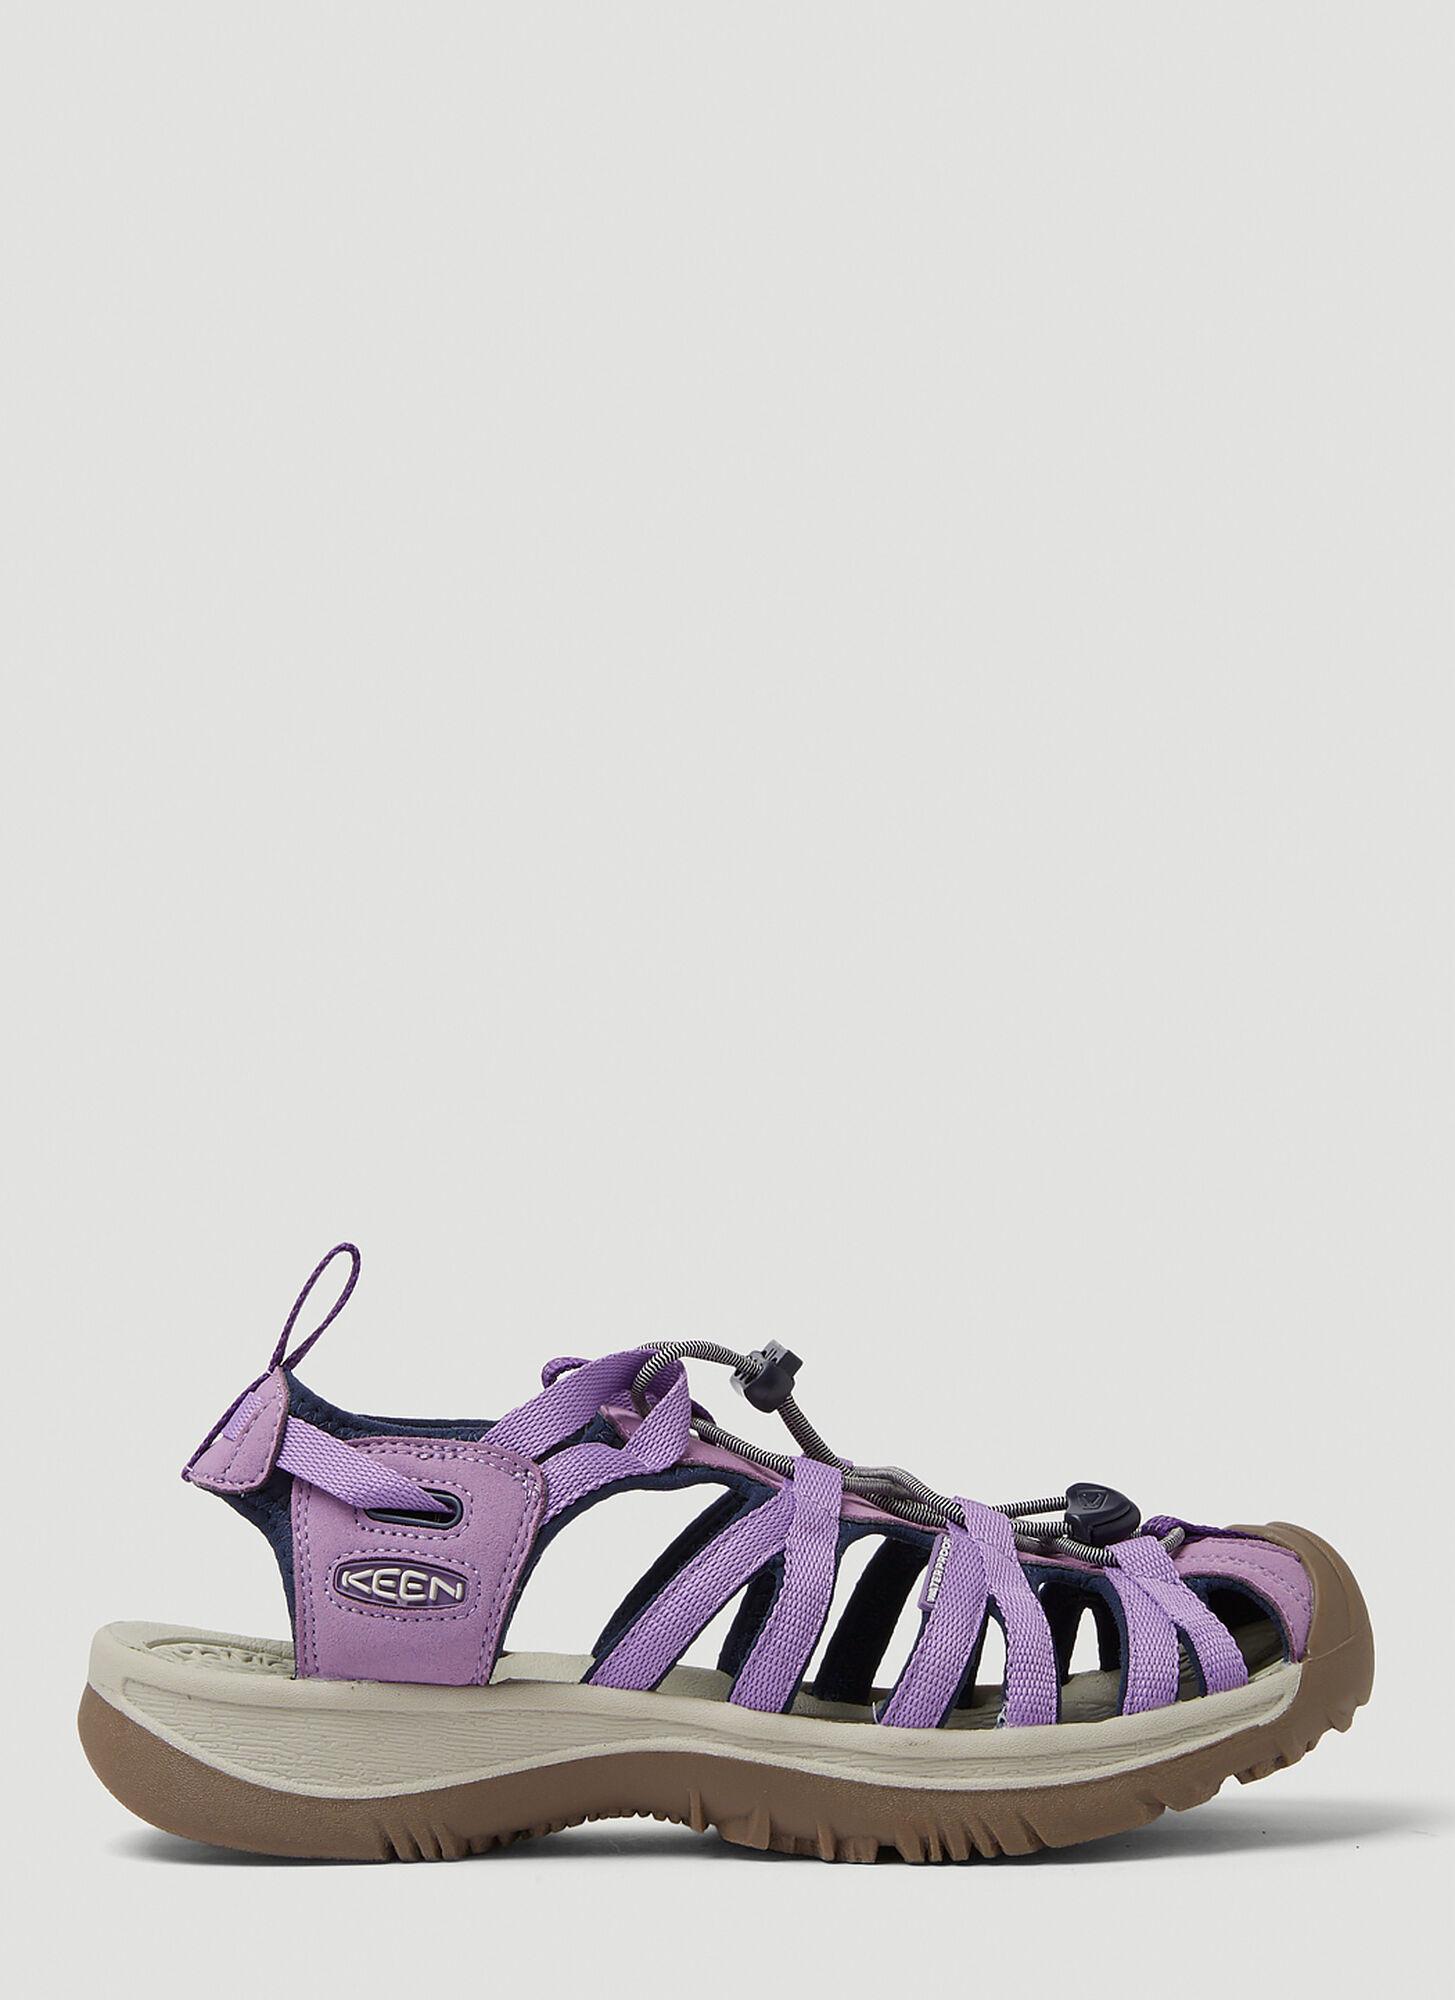 Keen Whisper Sandals in Purple | Lyst